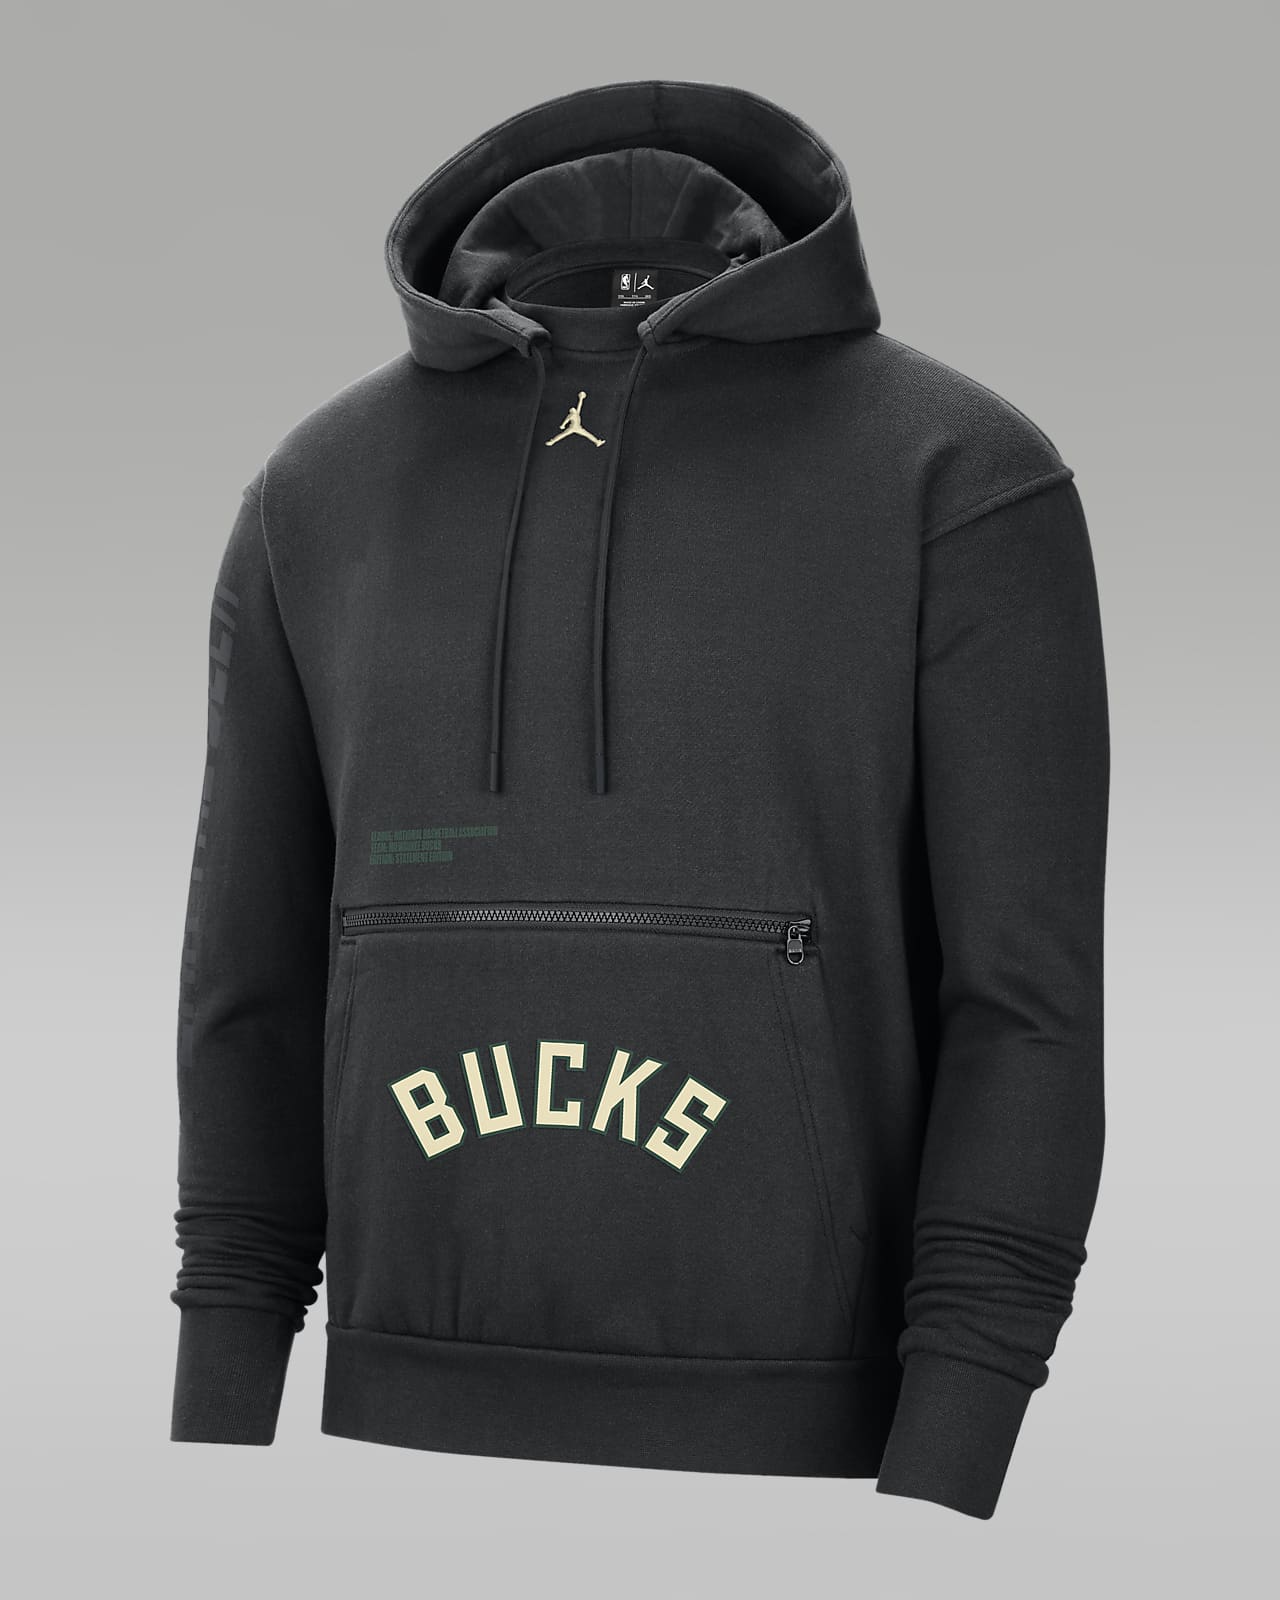 bucks hoodie nike